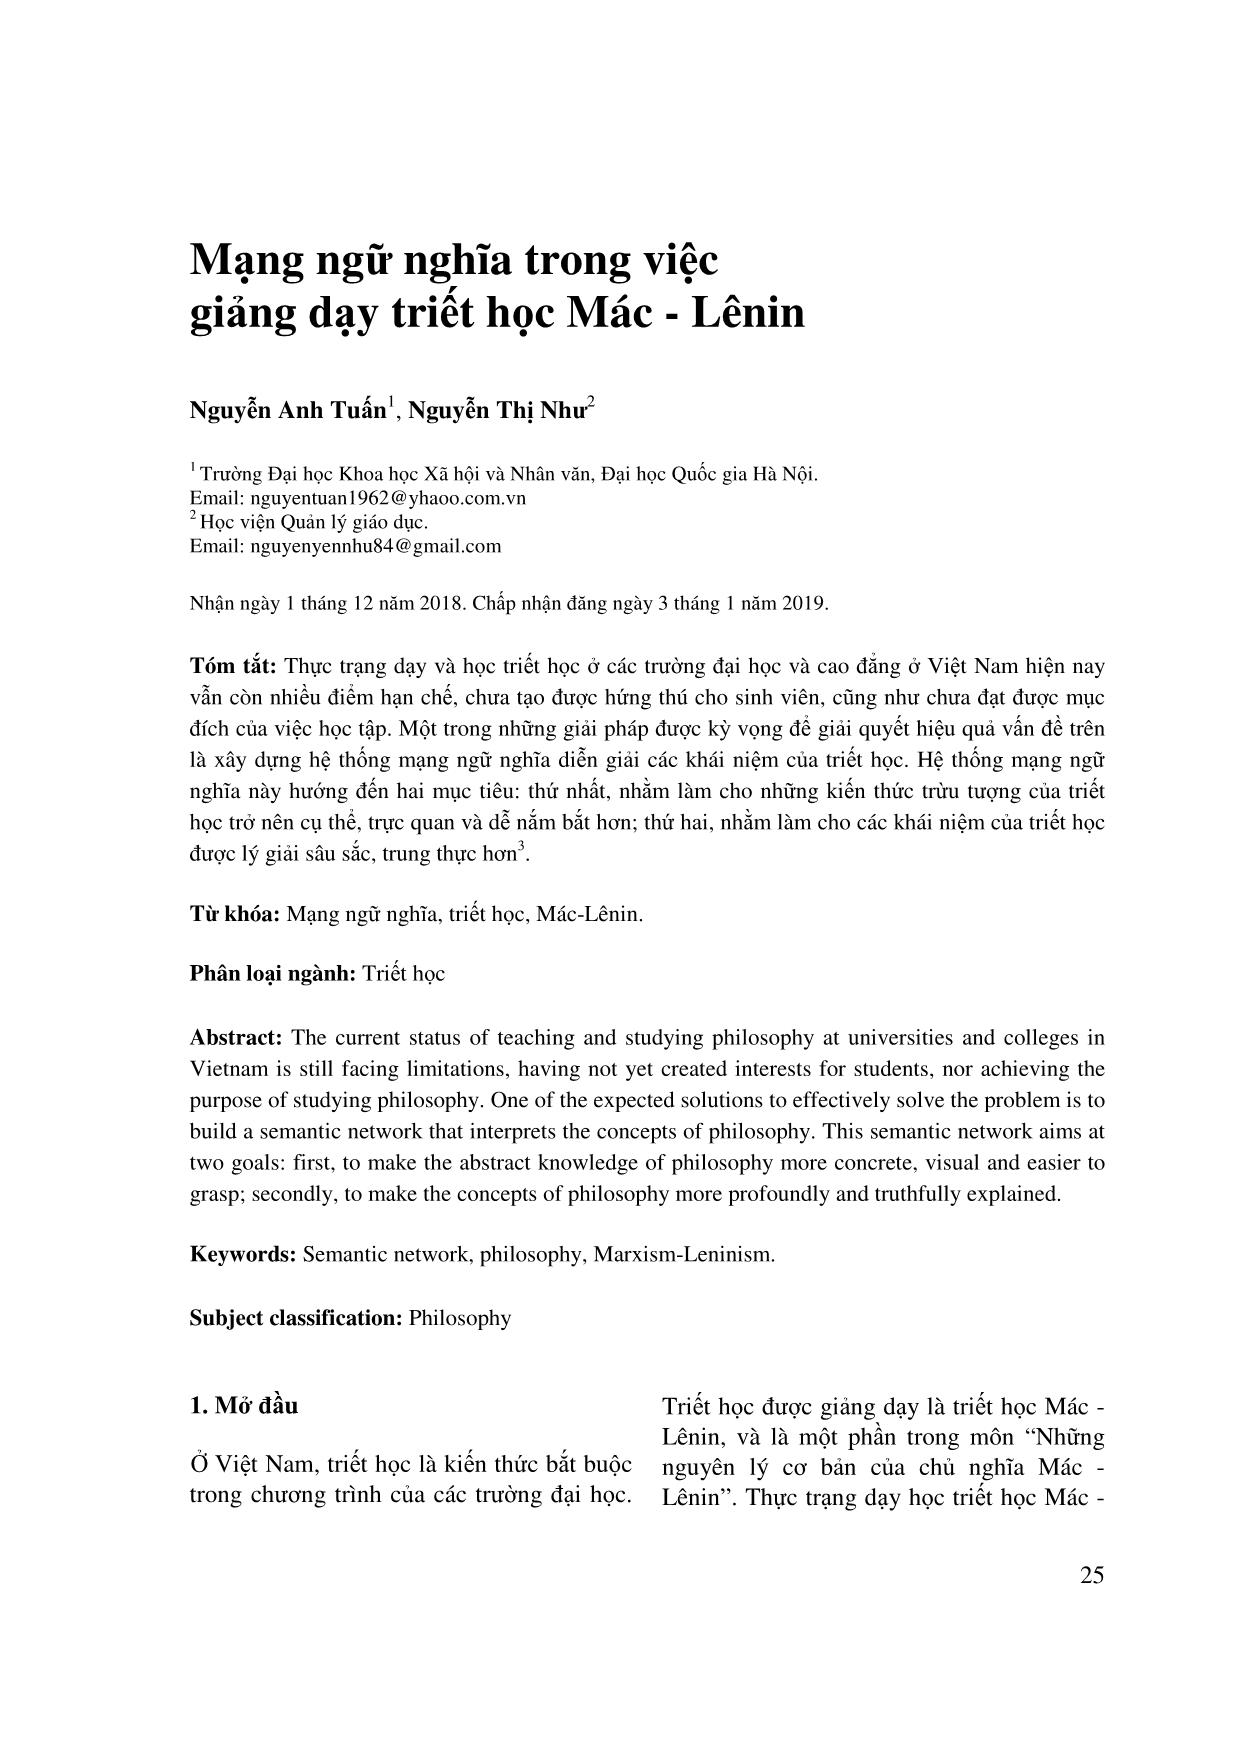 Mạng ngữ nghĩa trong việc giảng dạy triết học Mác - Lênin trang 1